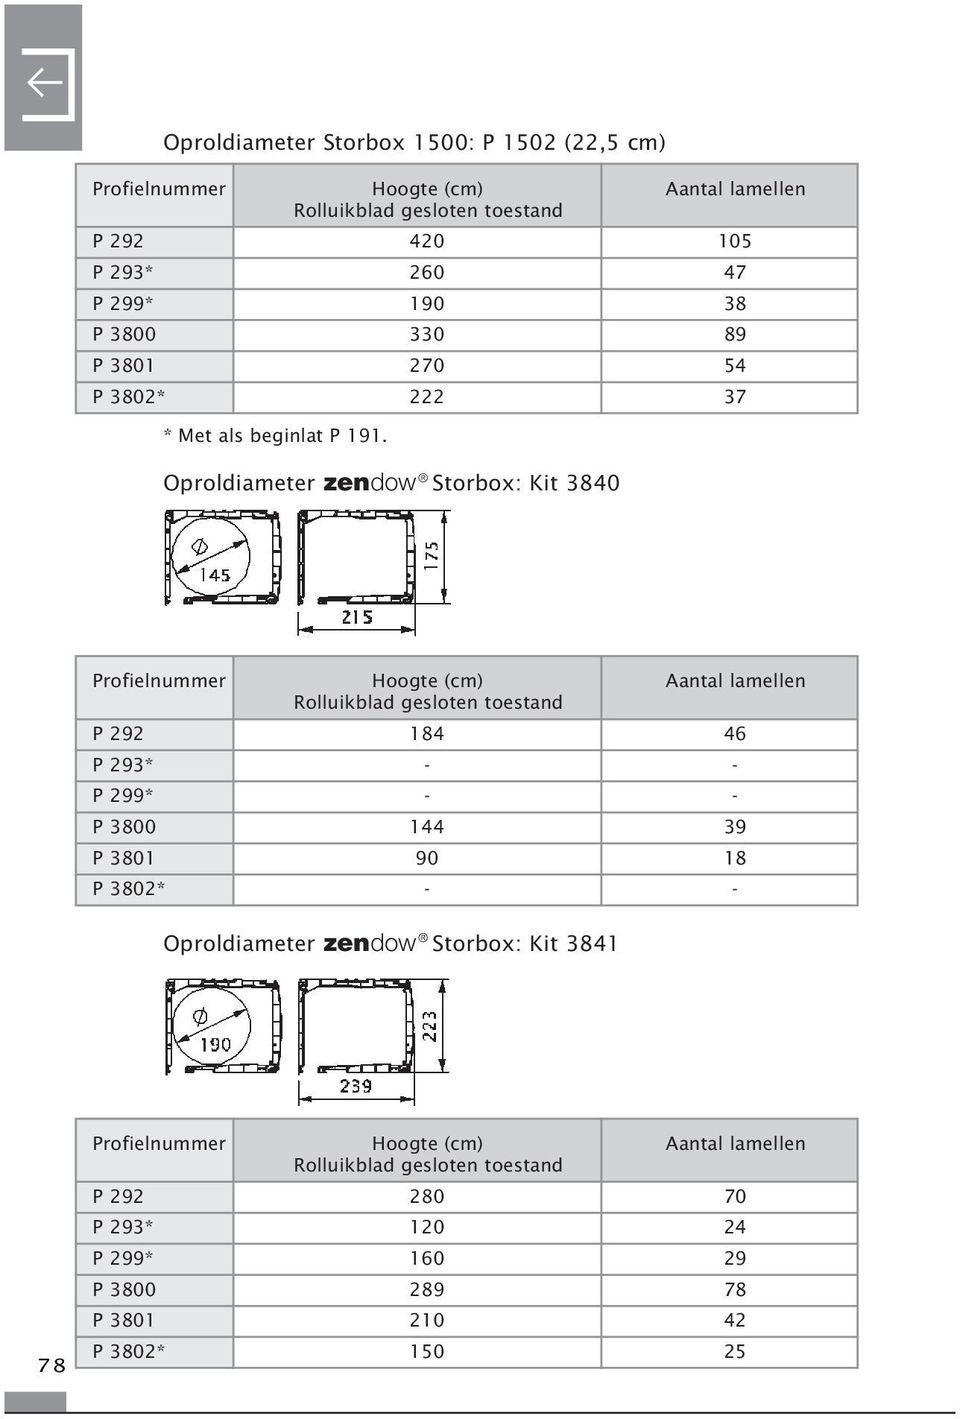 Oproldiameter zendow Storbox: Kit 3840 Profielnummer Hoogte (cm) Aantal lamellen Rolluikblad gesloten toestand P 292 184 46 P 293* - - P 299* - - P 3800